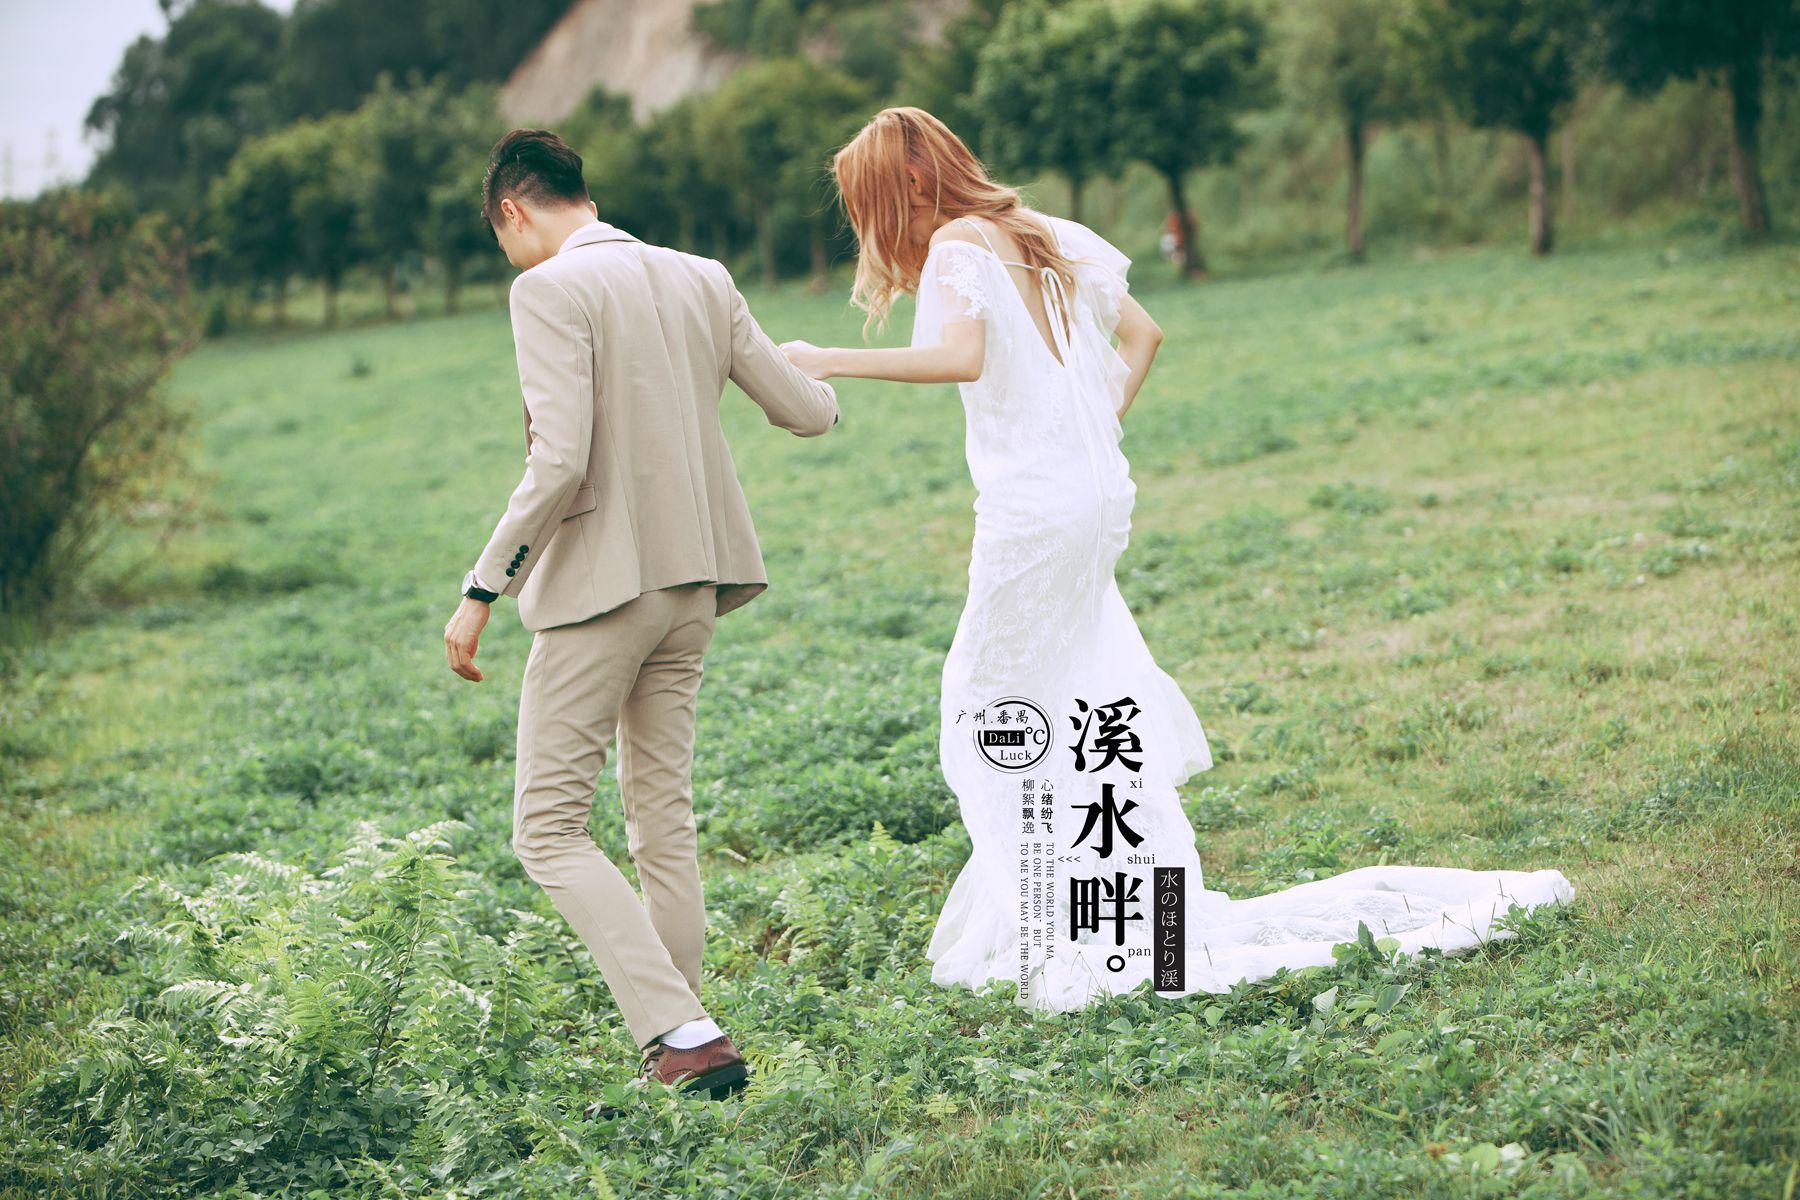 2017年7月广州婚纱照,江门婚纱照,婚纱照图片